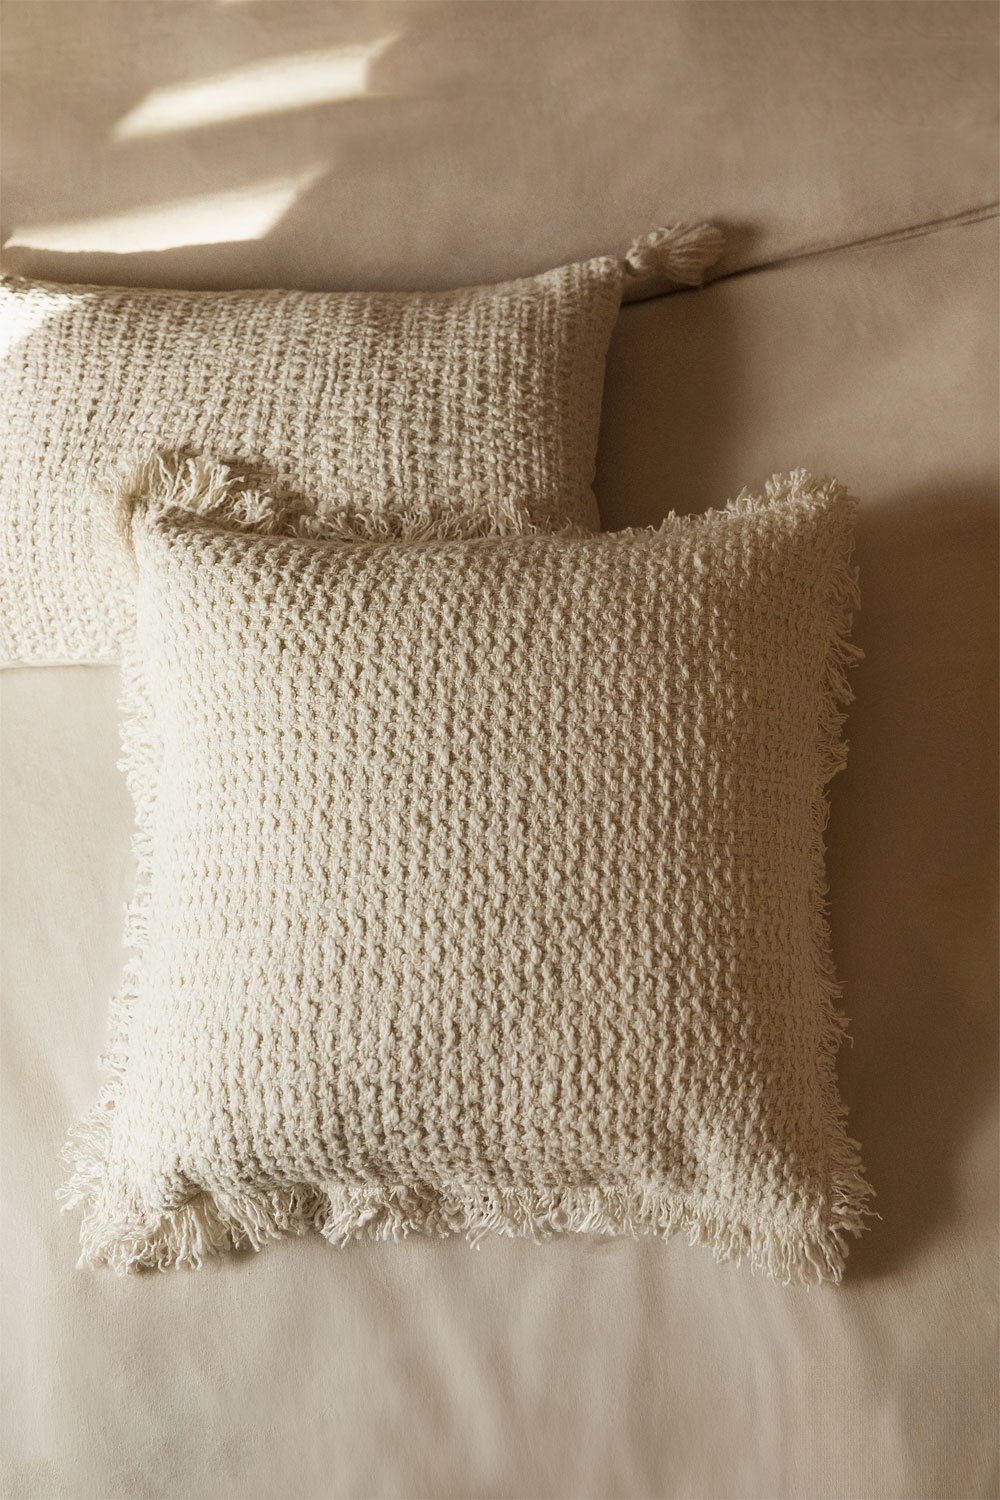 Cuscino quadrato in cotone (45x45 cm) Seyrig, immagine della galleria 1